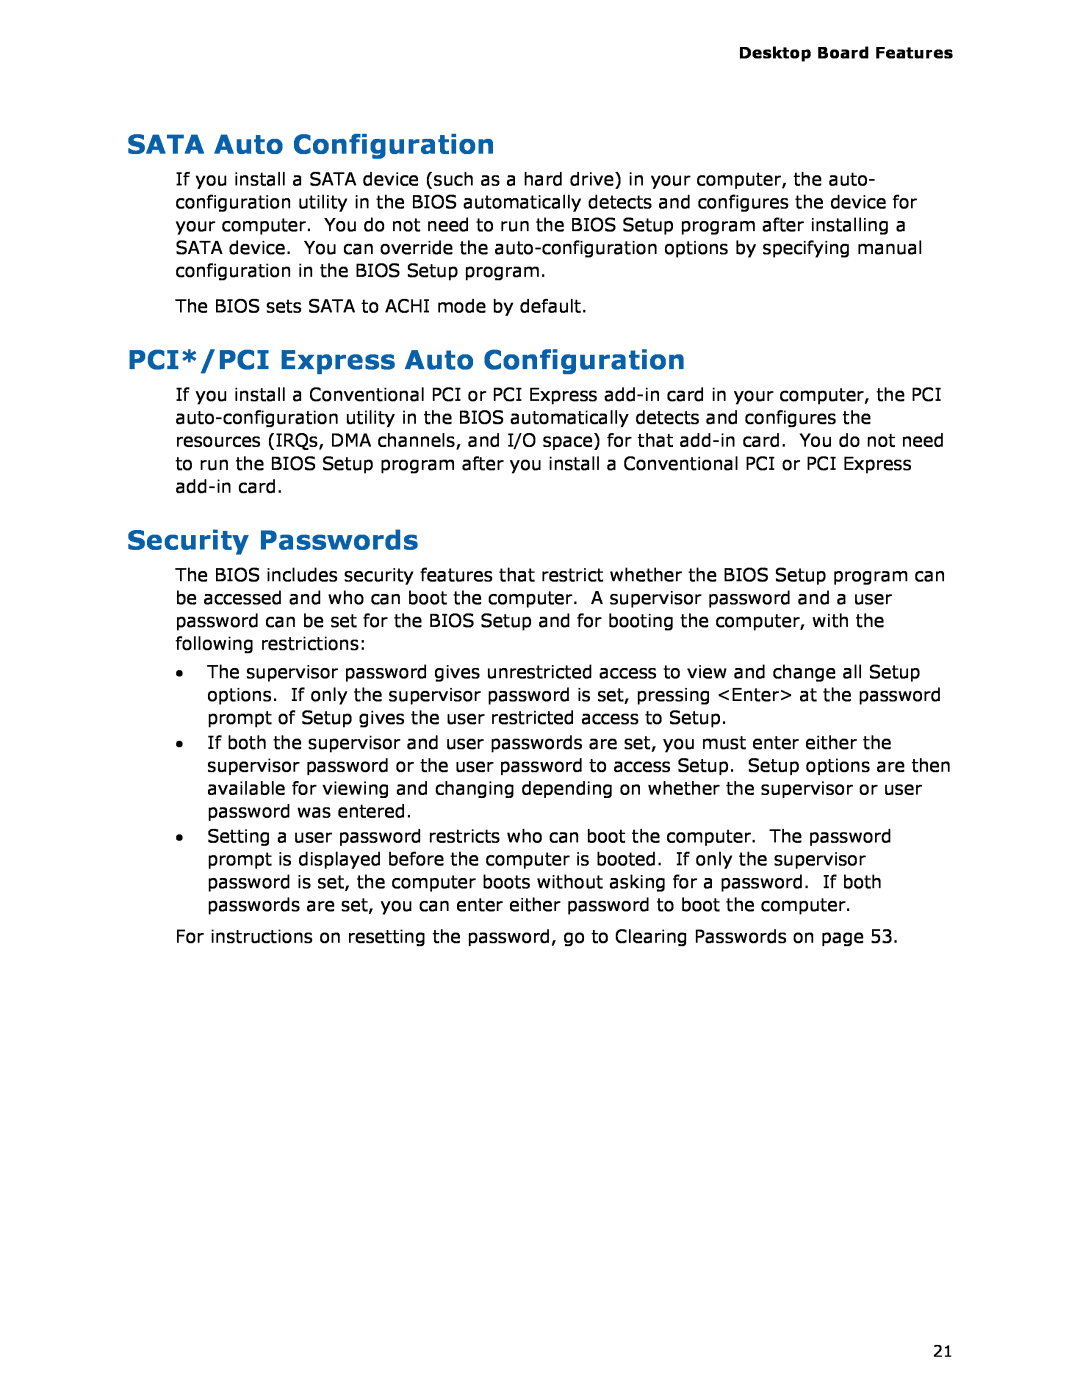 Intel BLKDH67GDB3, G13841-001 manual SATA Auto Configuration, PCI*/PCI Express Auto Configuration, Security Passwords 